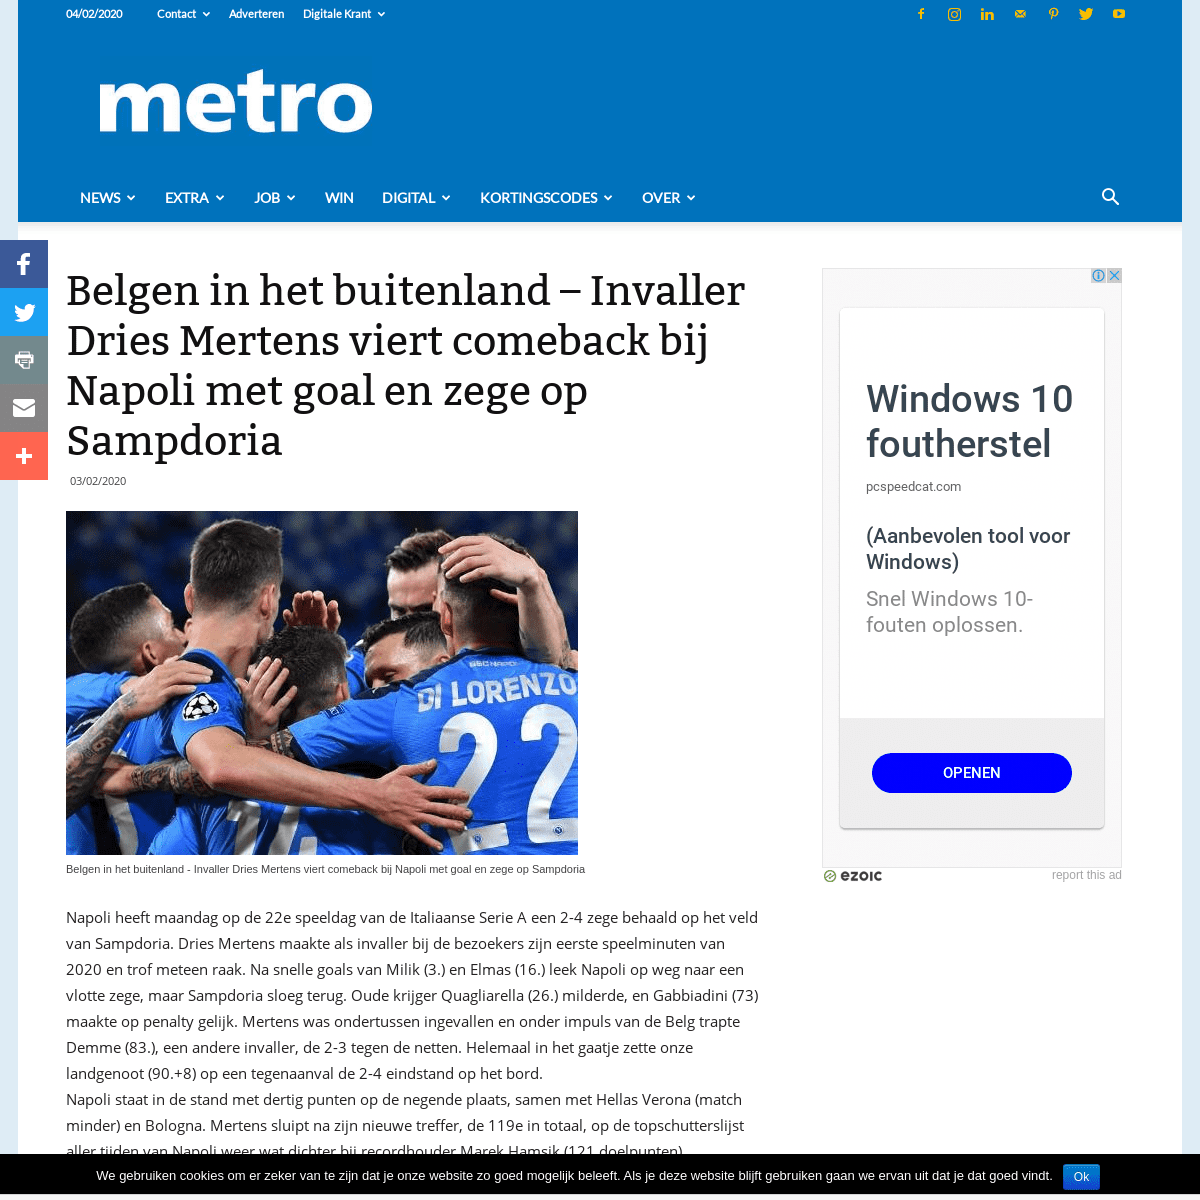 A complete backup of nl.metrotime.be/2020/02/03/news/belgen-in-het-buitenland-invaller-dries-mertens-viert-comeback-bij-napoli-m